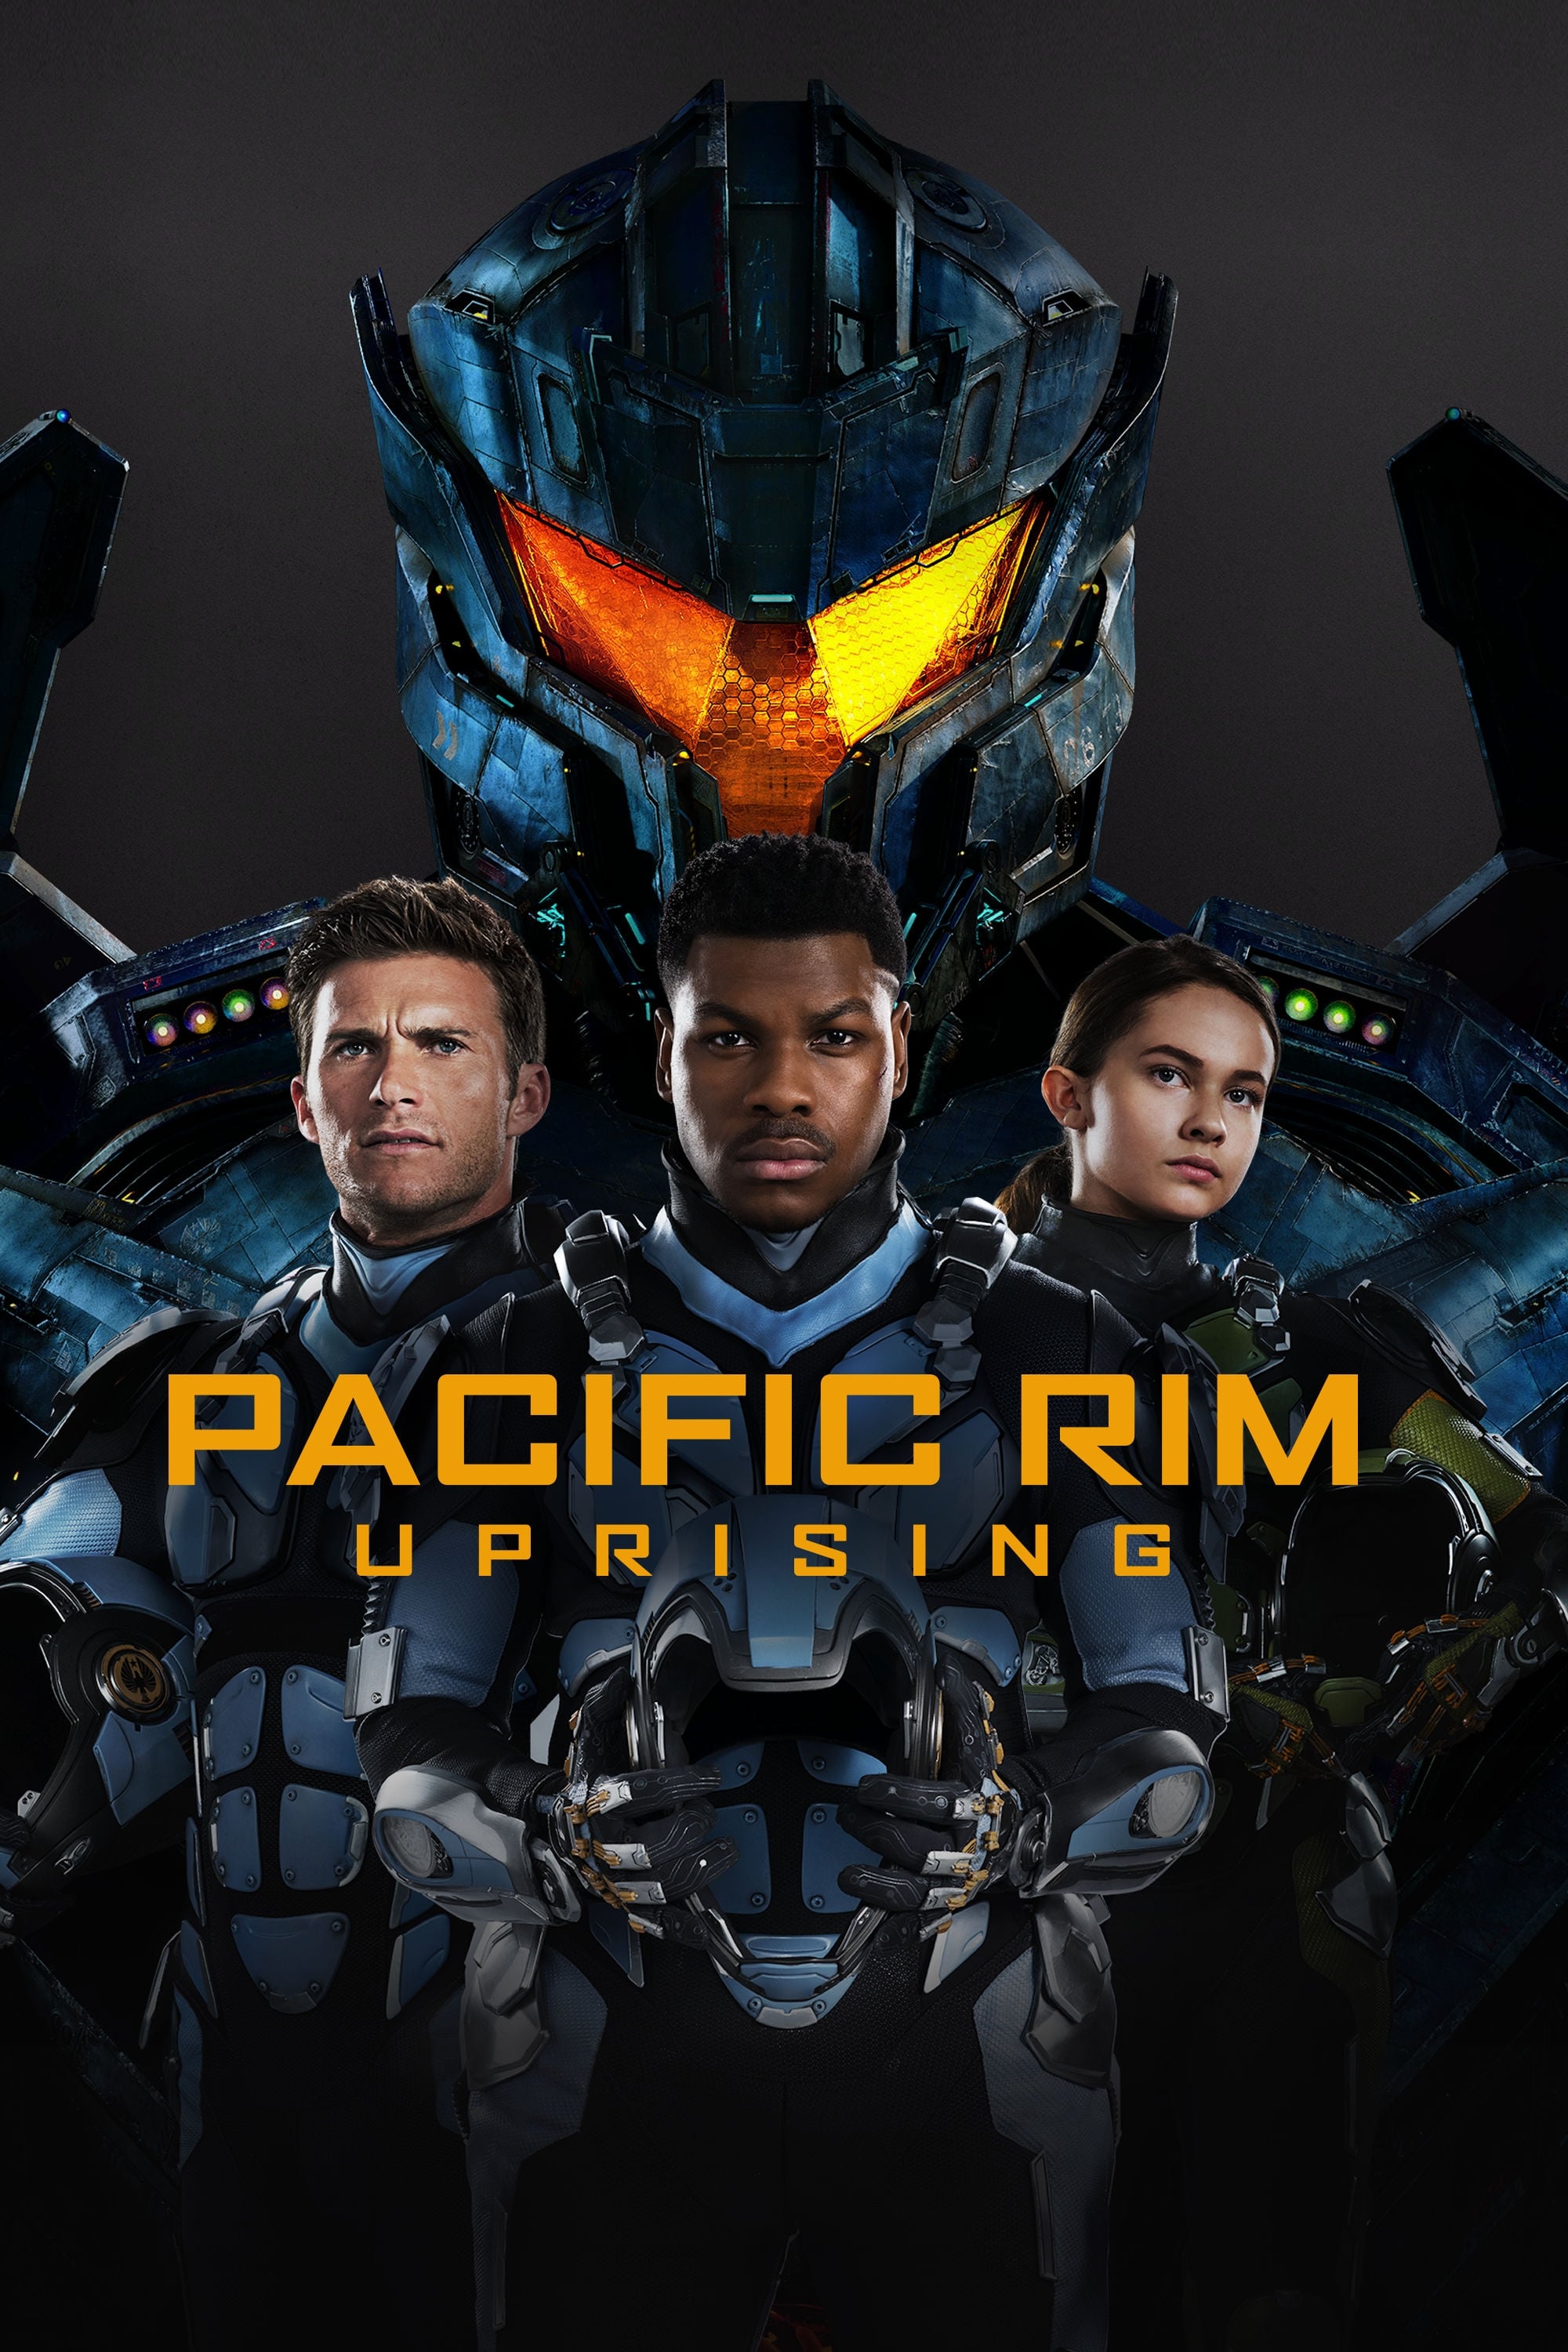 Pacific Rim - Uprising